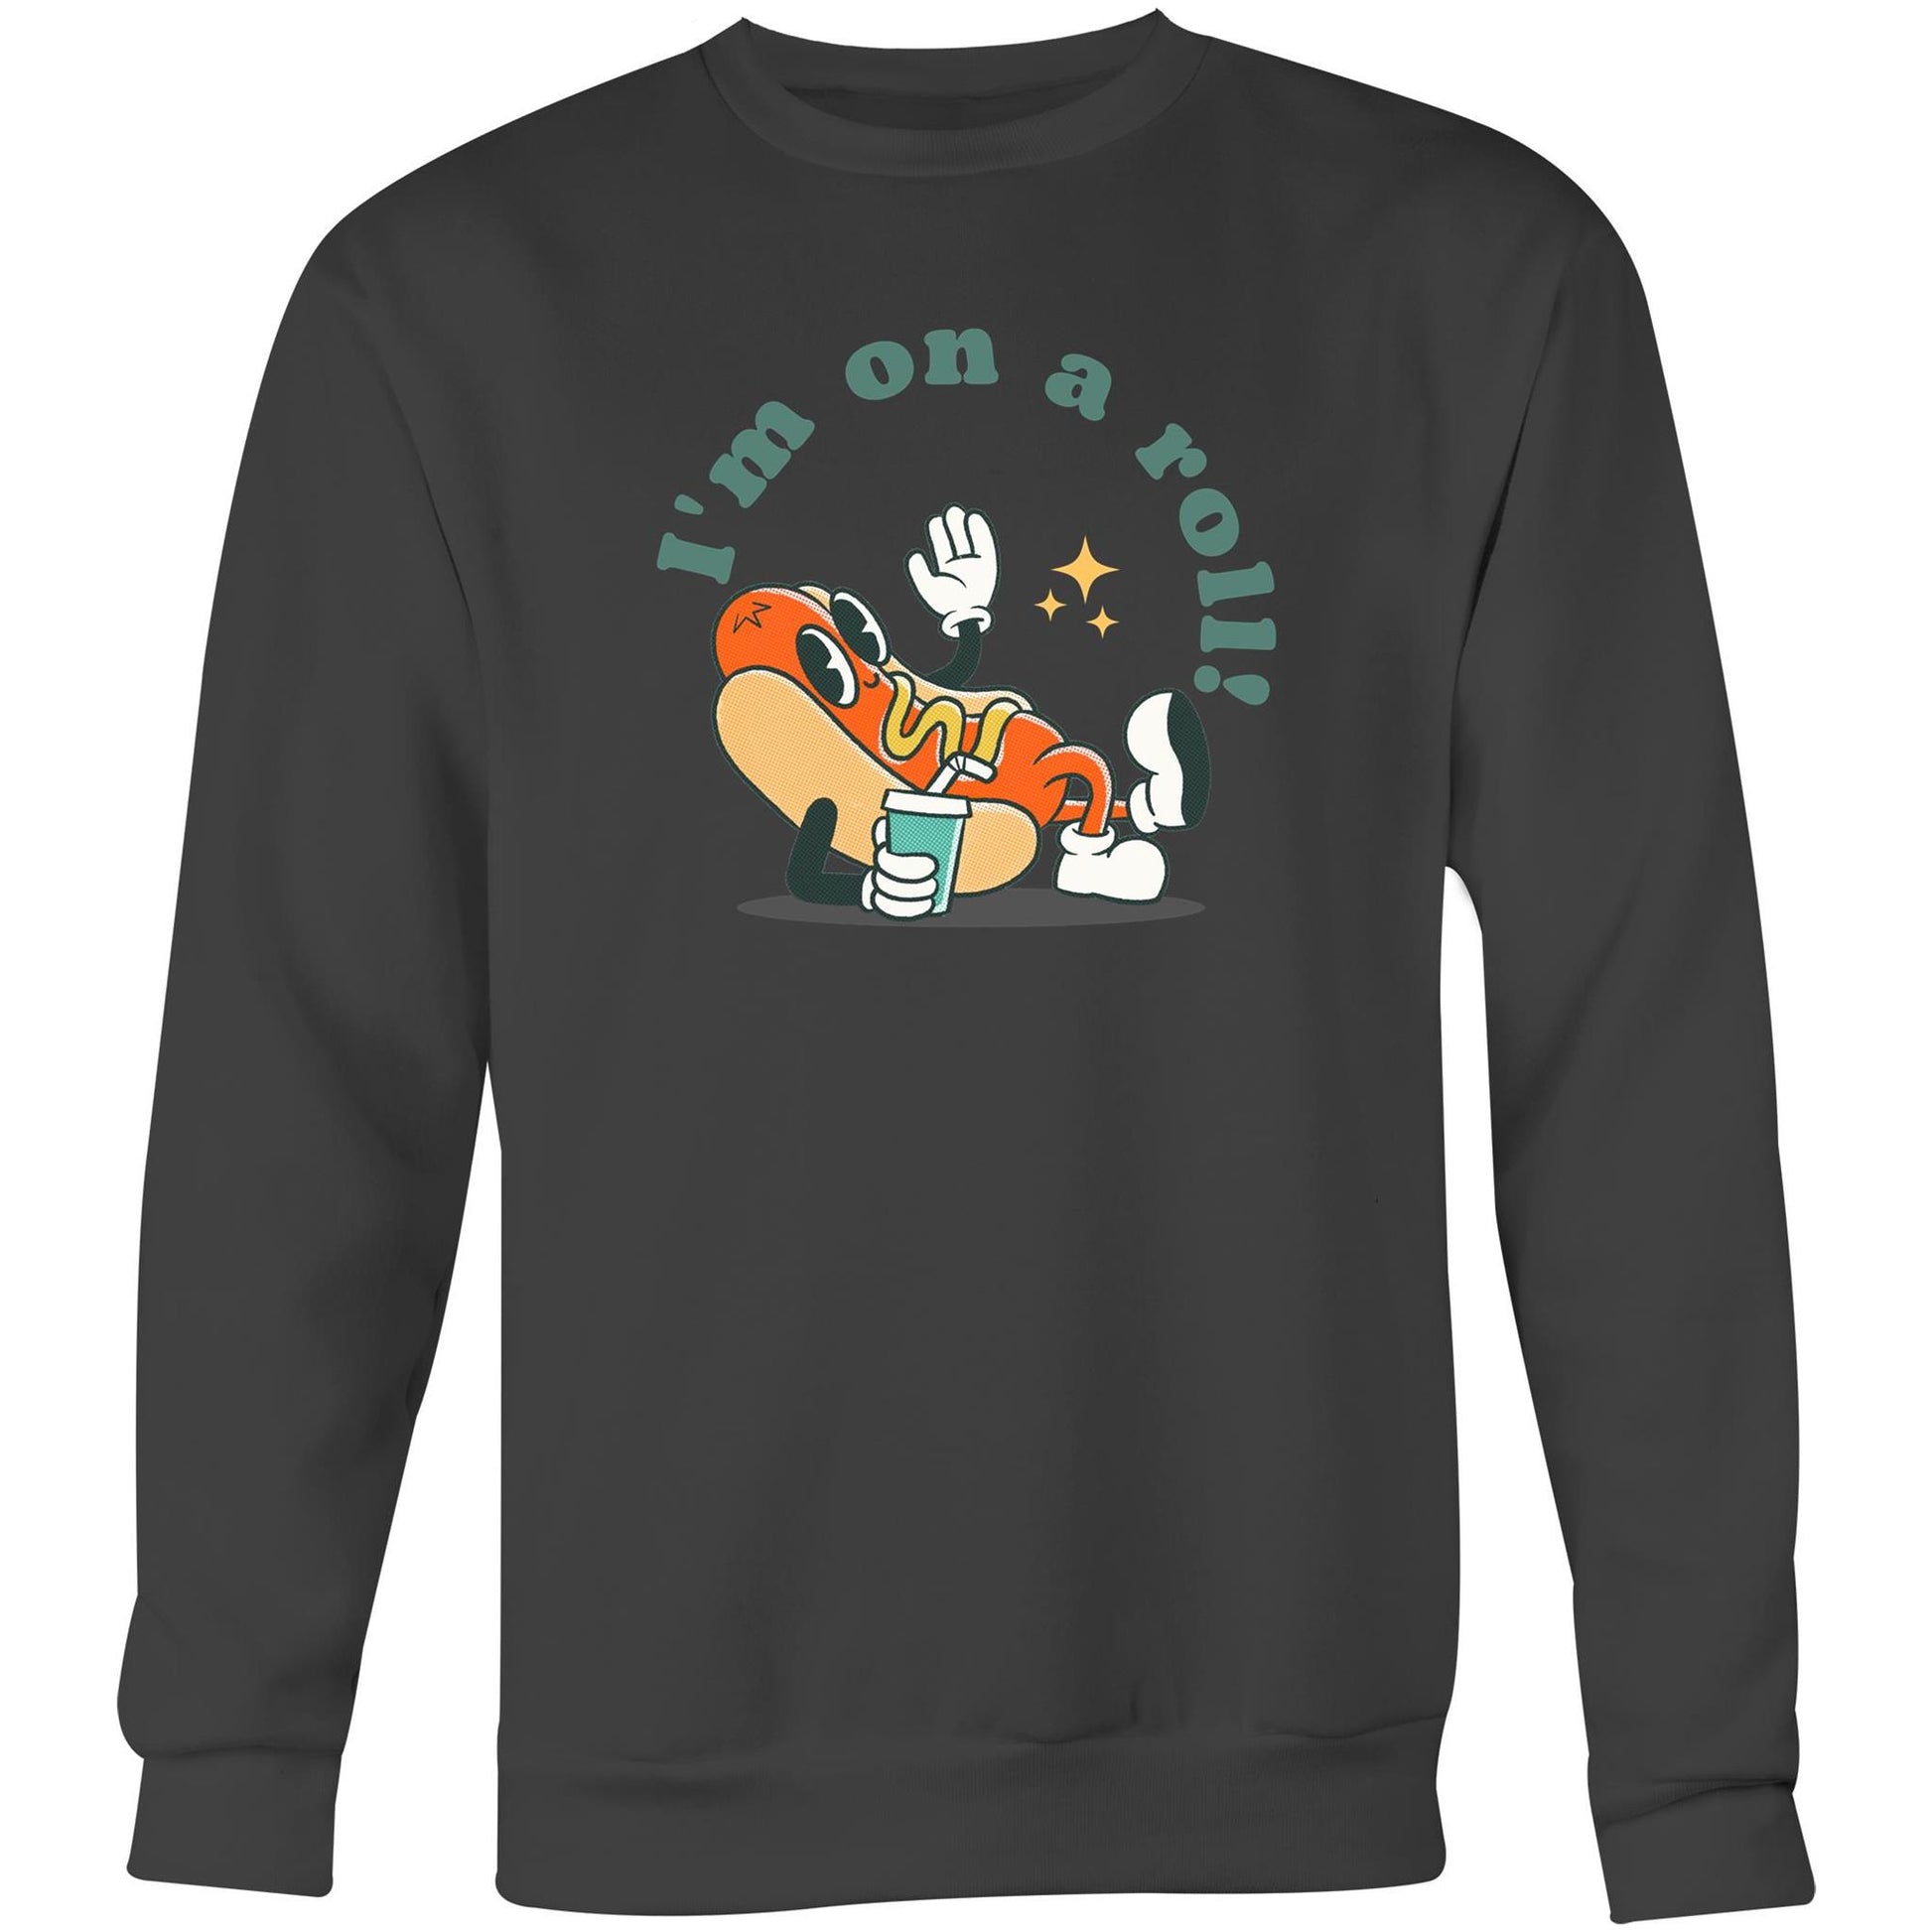 Hot Dog, I'm On A Roll - Crew Sweatshirt Coal Sweatshirt Food